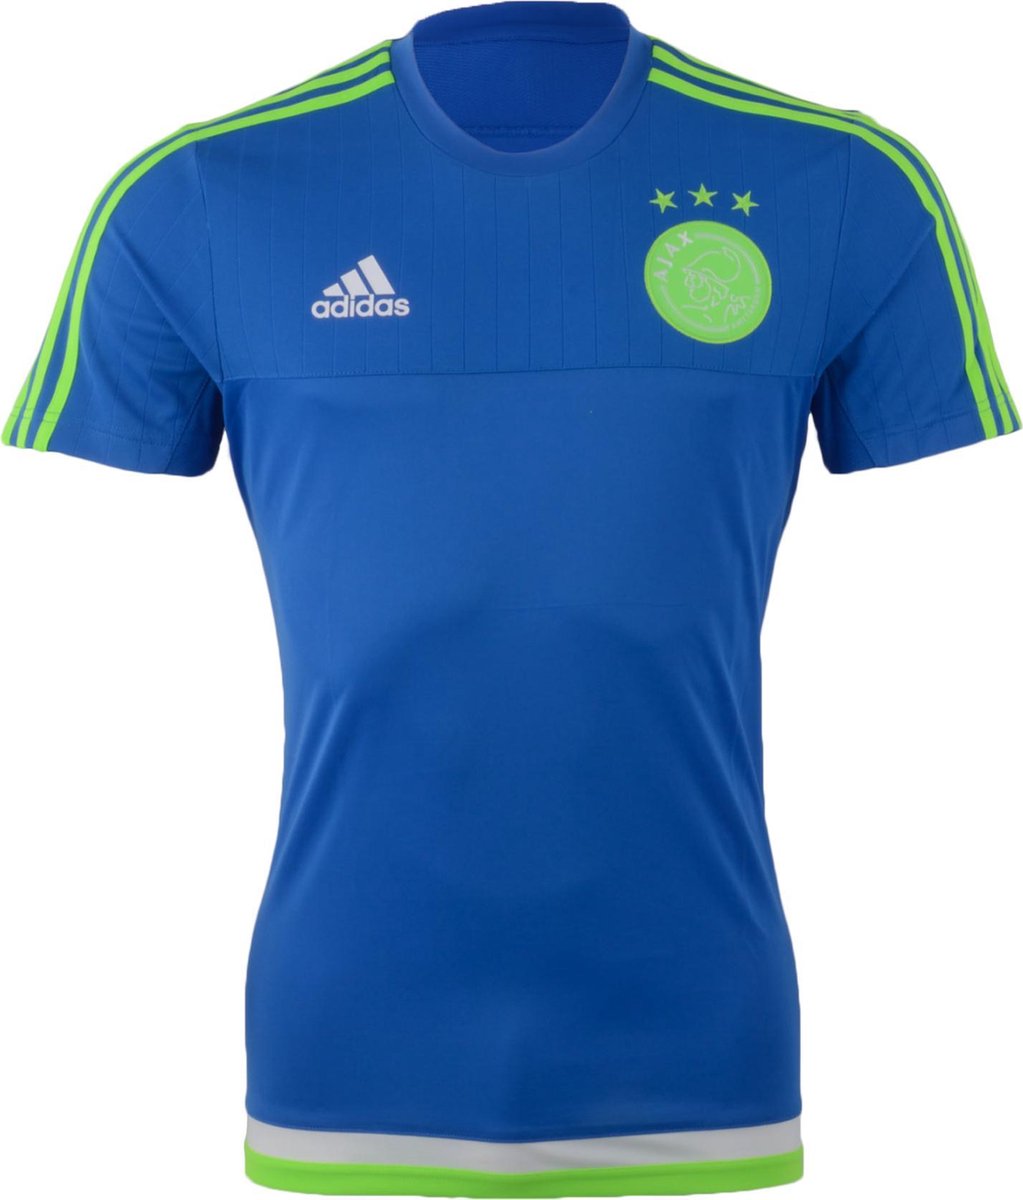 Veel Gesprekelijk hongersnood adidas Ajax Training Jersey Sportshirt - Maat S - Mannen - blauw/groen |  bol.com